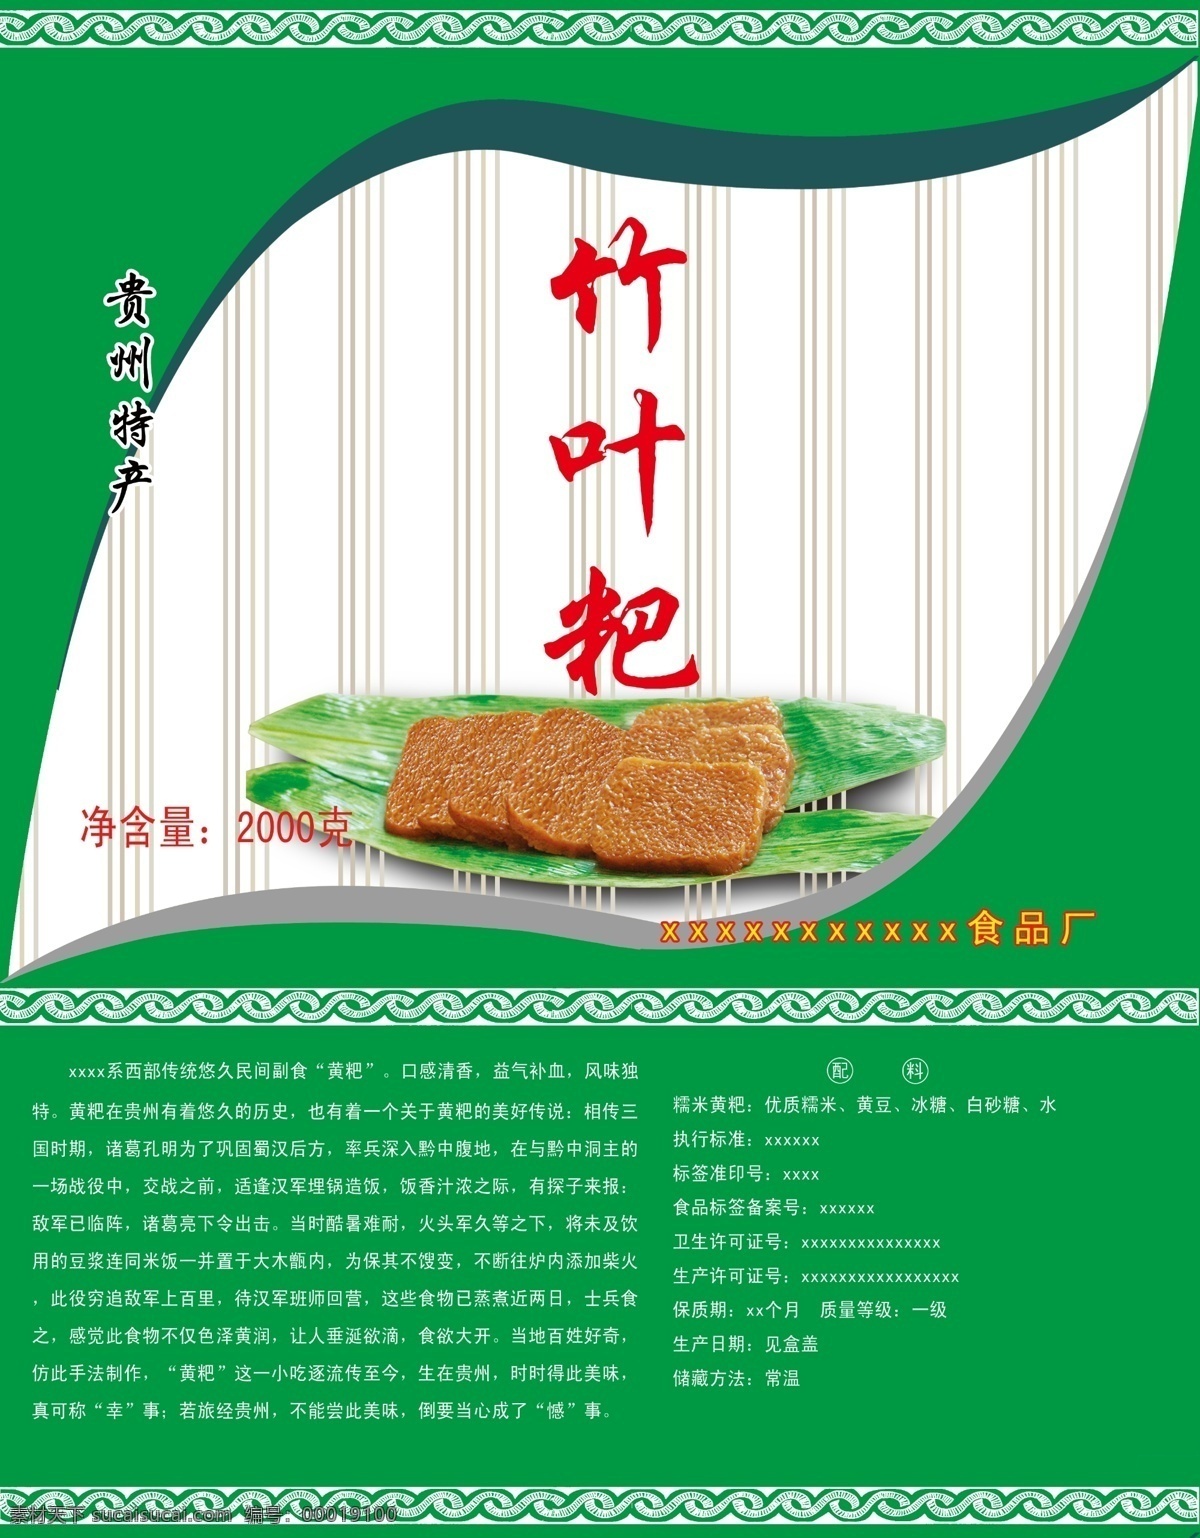 黄粑 竹叶粑 贵州特产 绿色食品 绿色包装 彩色包装 纸箱包装 花纹 包装设计 广告设计模板 源文件